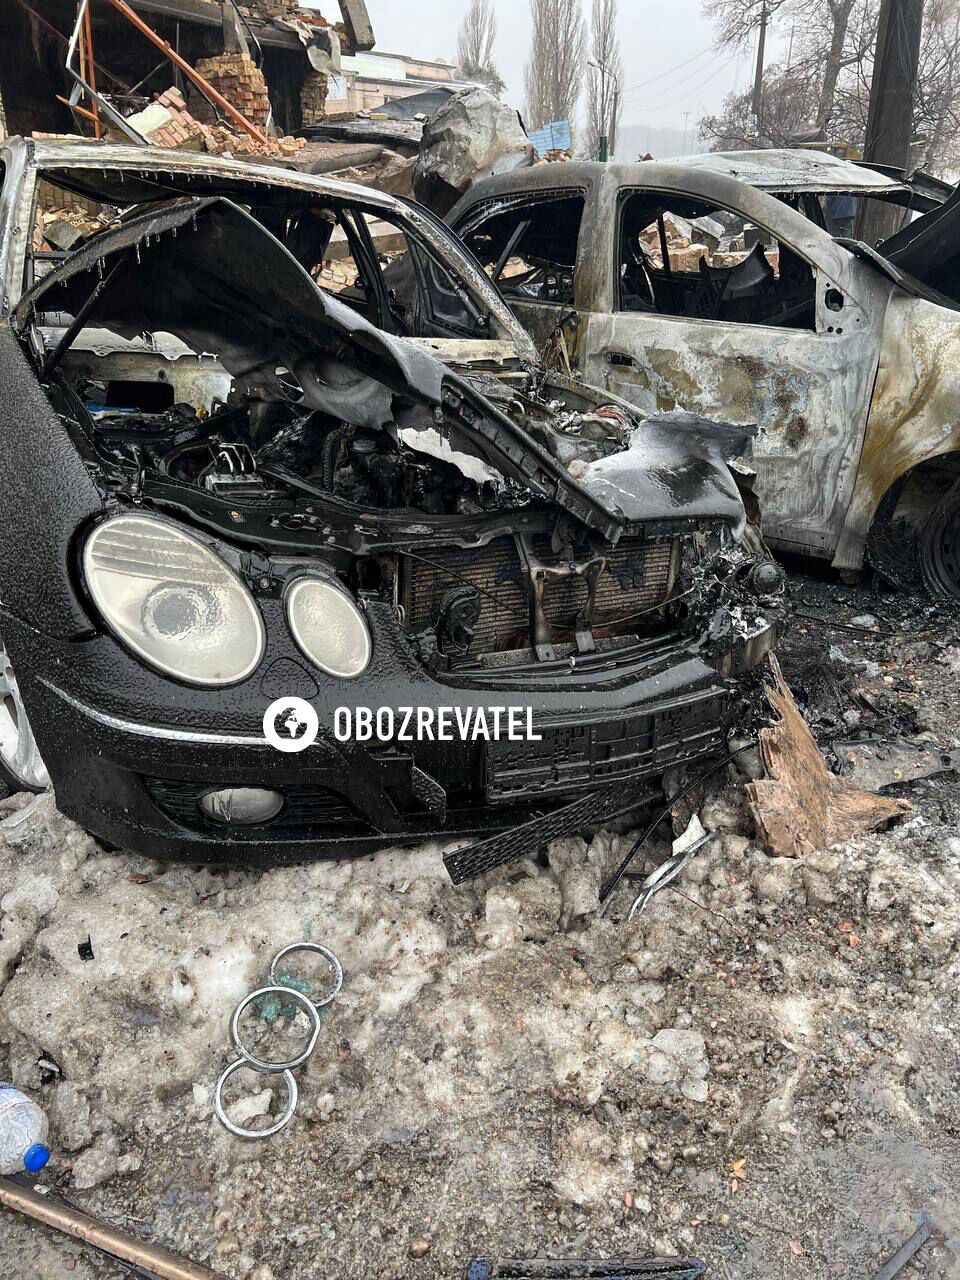 Згорілі машини та лампадки: що відбувається на місці прильоту ракети в Києві. Фото та відео